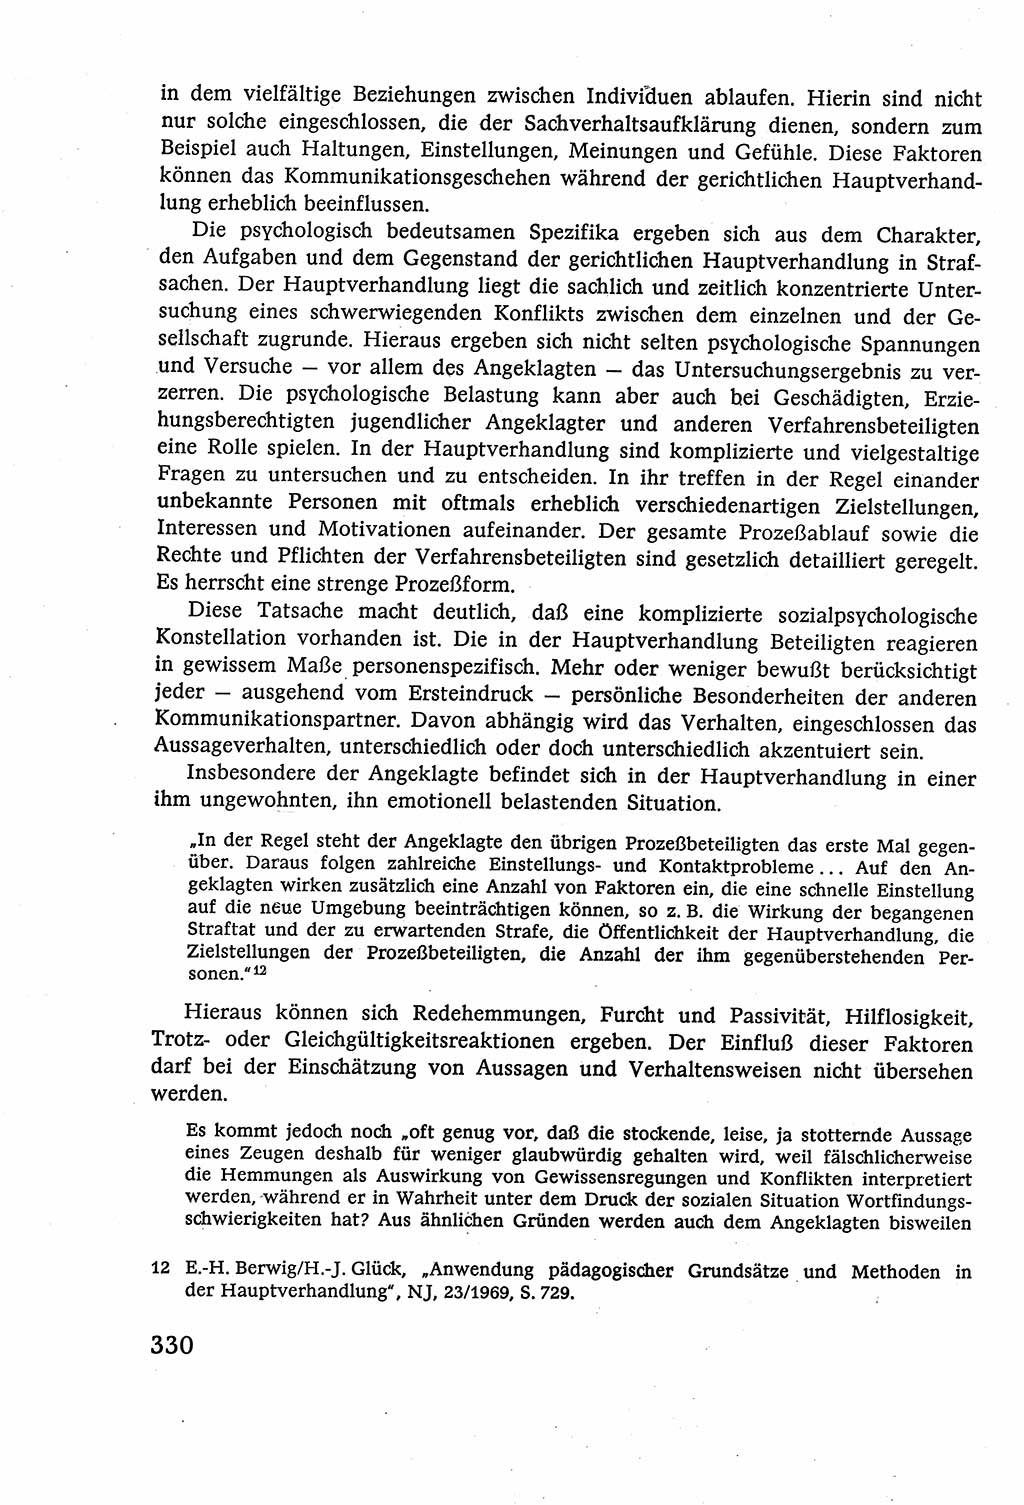 Strafverfahrensrecht [Deutsche Demokratische Republik (DDR)], Lehrbuch 1977, Seite 330 (Strafverf.-R. DDR Lb. 1977, S. 330)